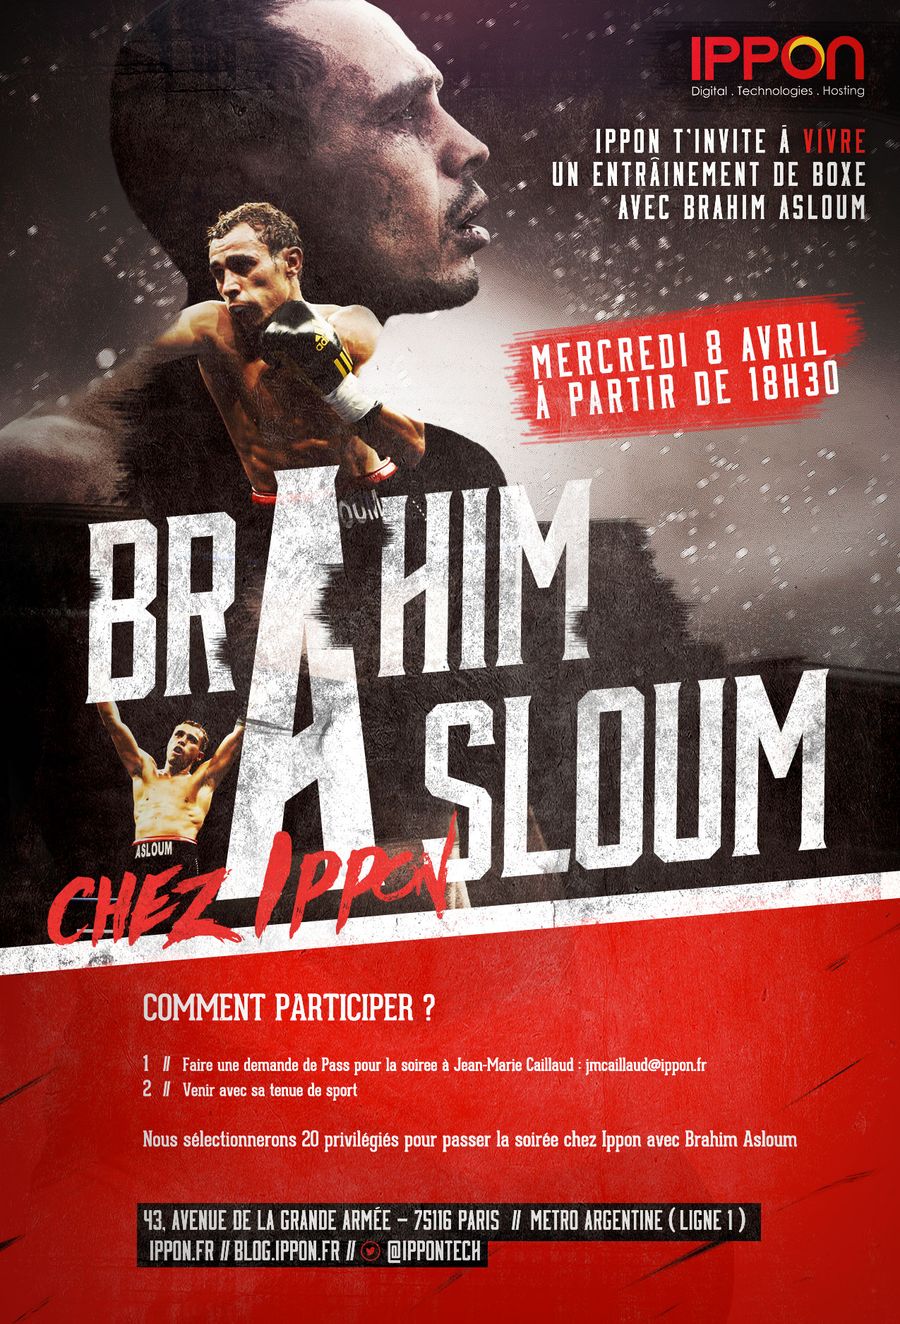 Participez à un entraînement de boxe avec Brahim Asloum chez Ippon